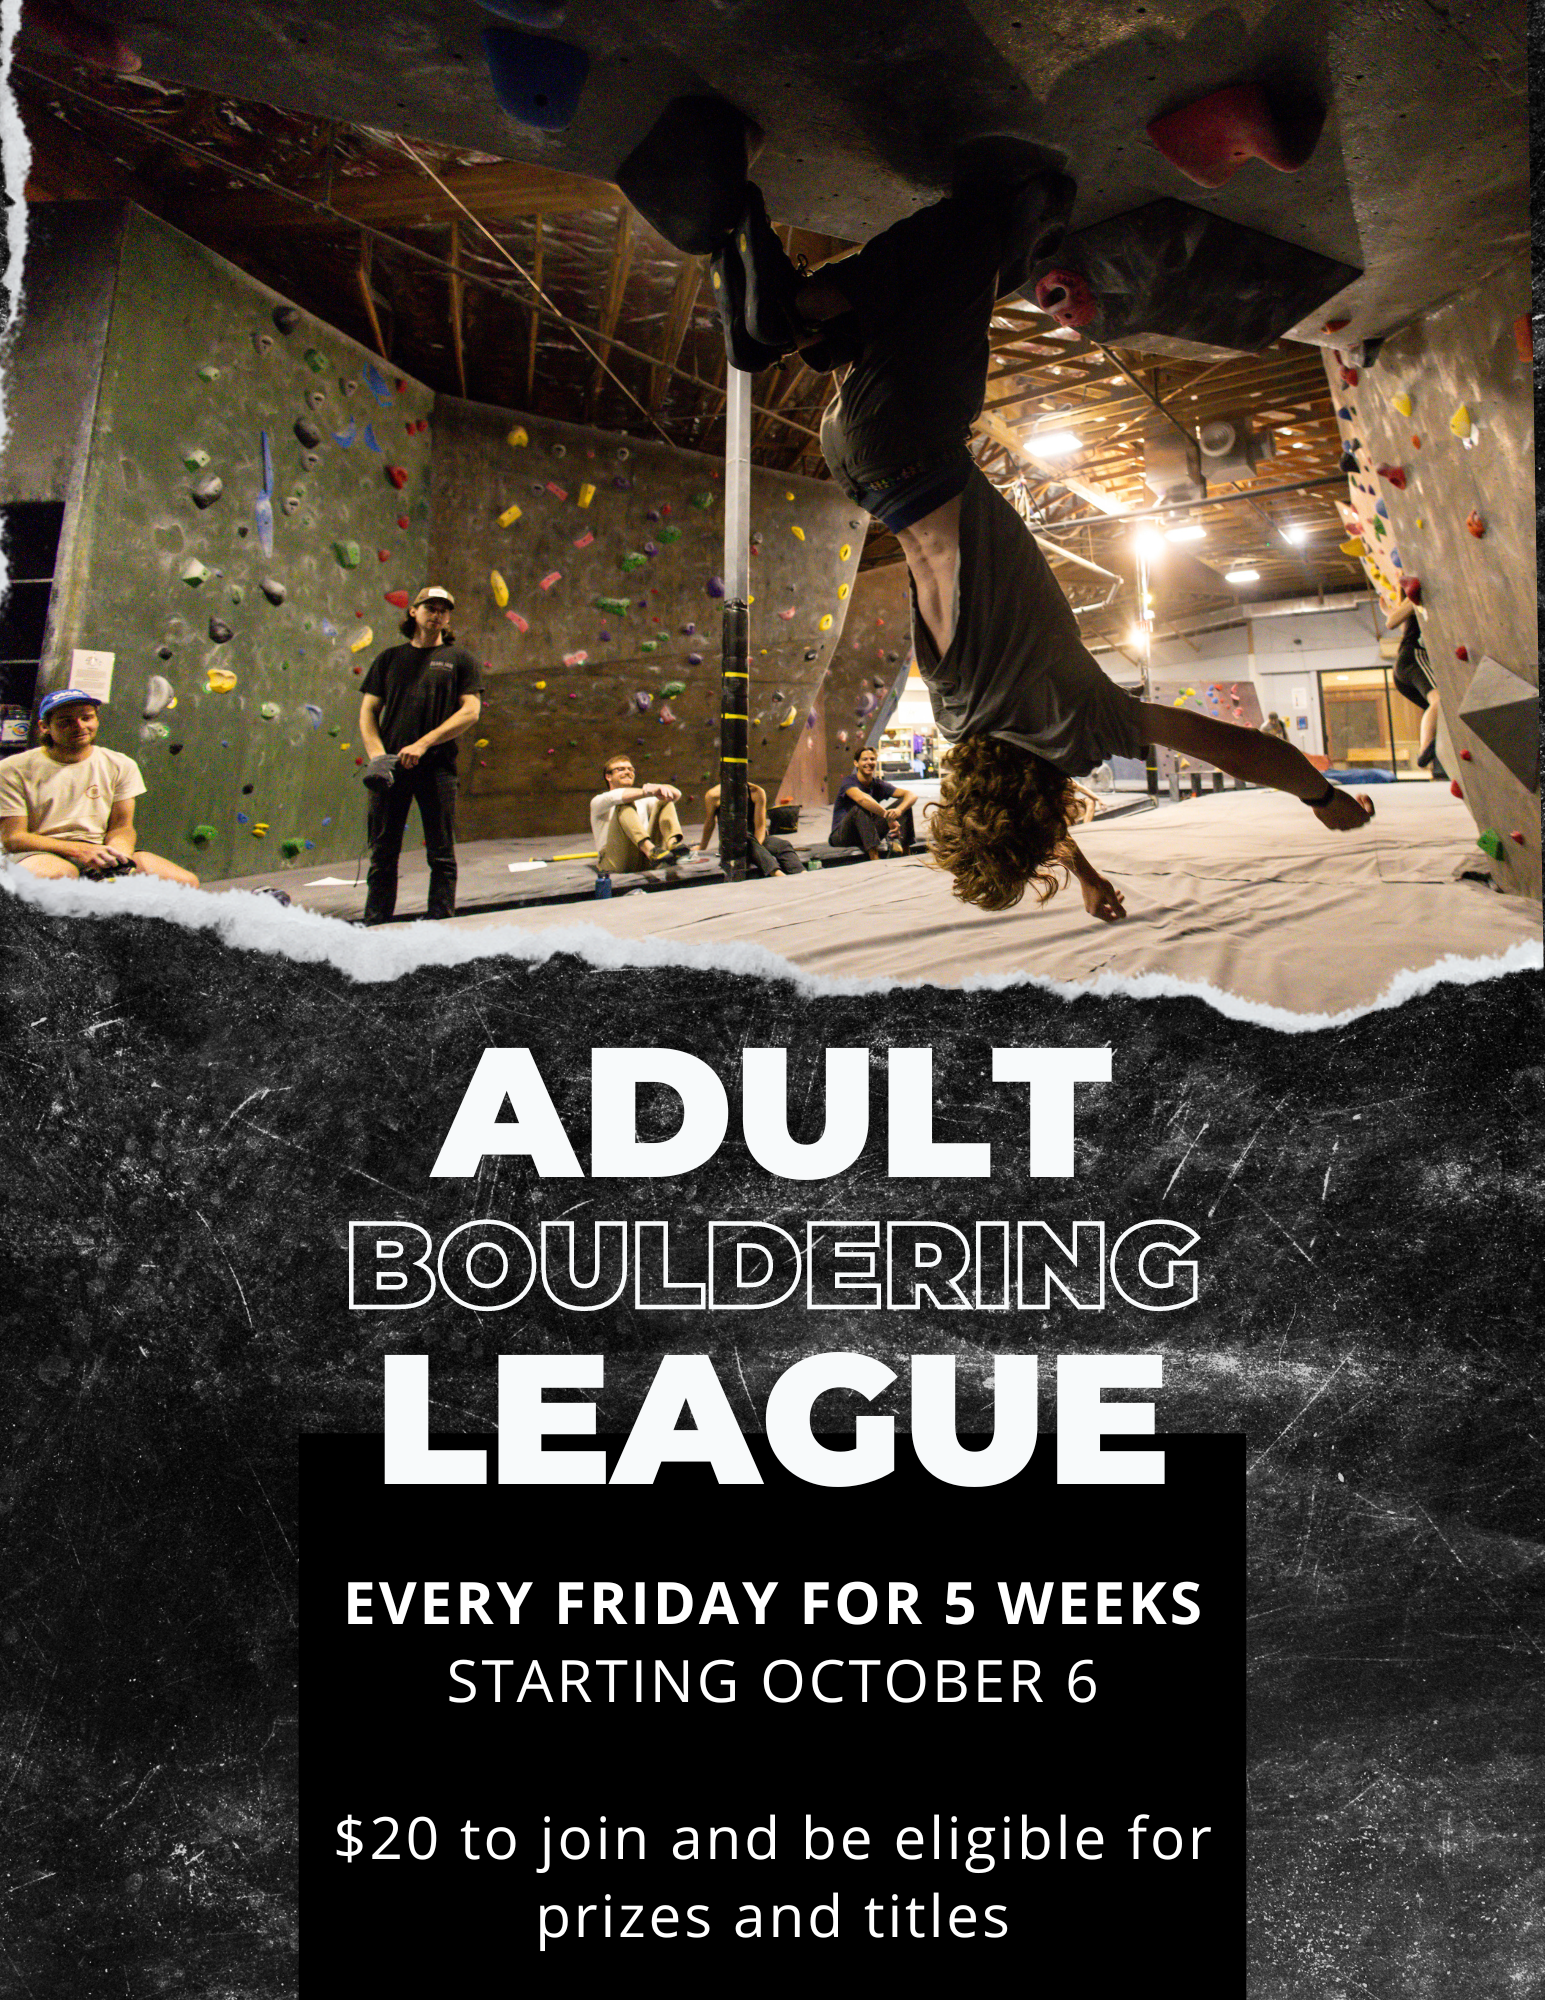 Adult Bouldering League – ABL